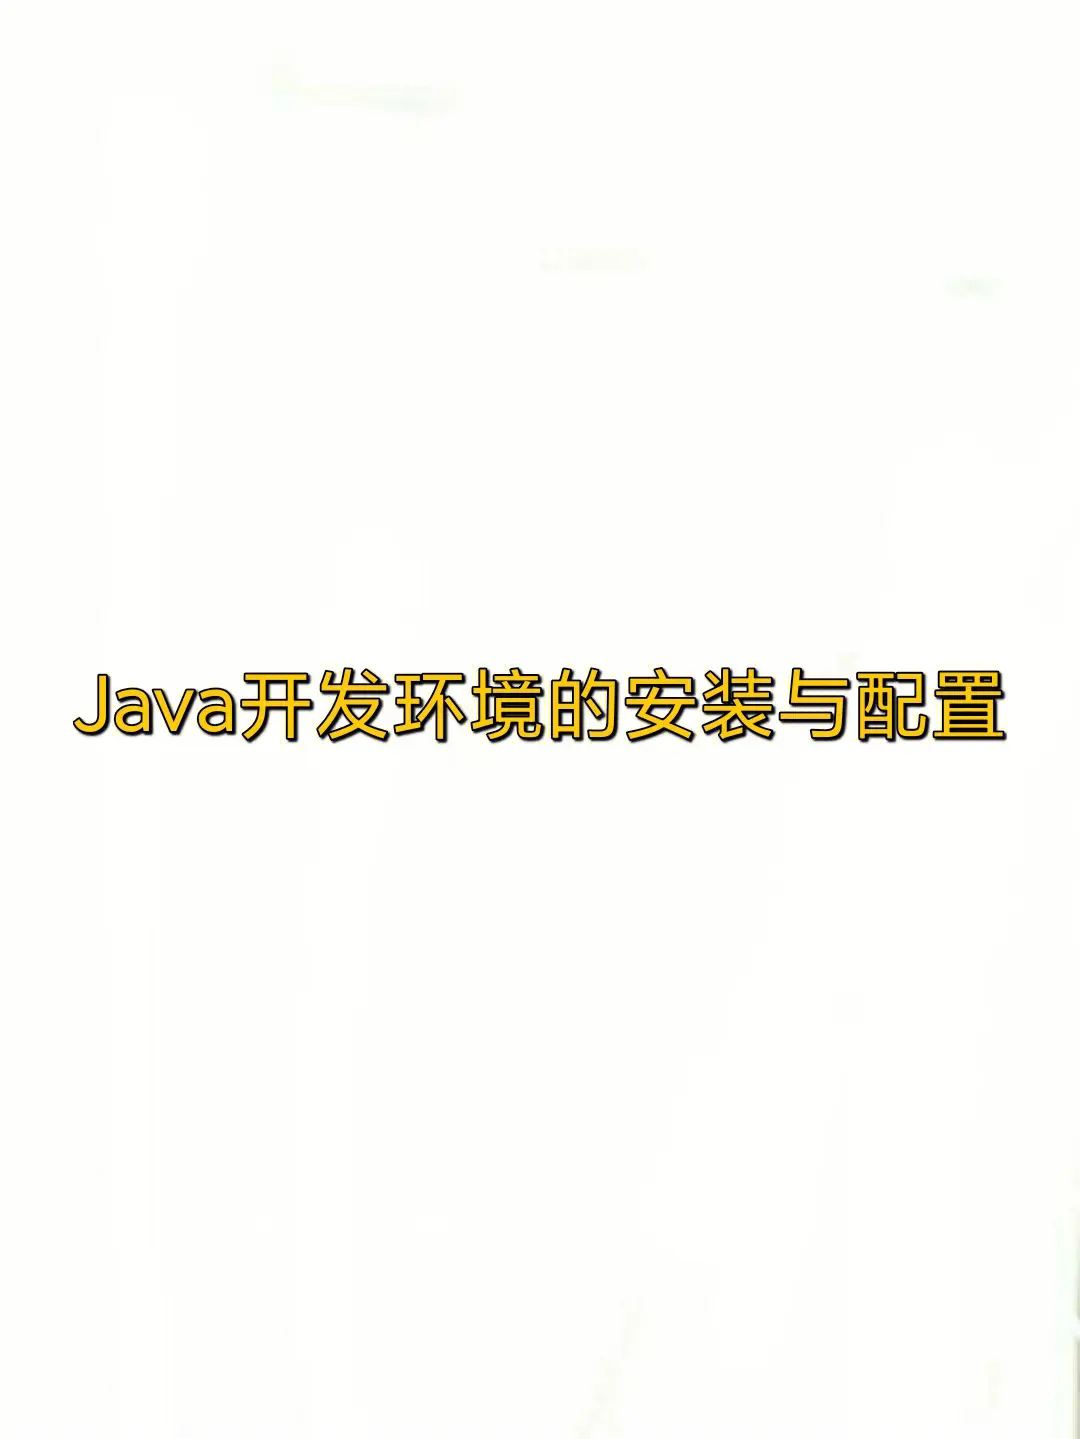 【工具类】安装并配置JDK环境